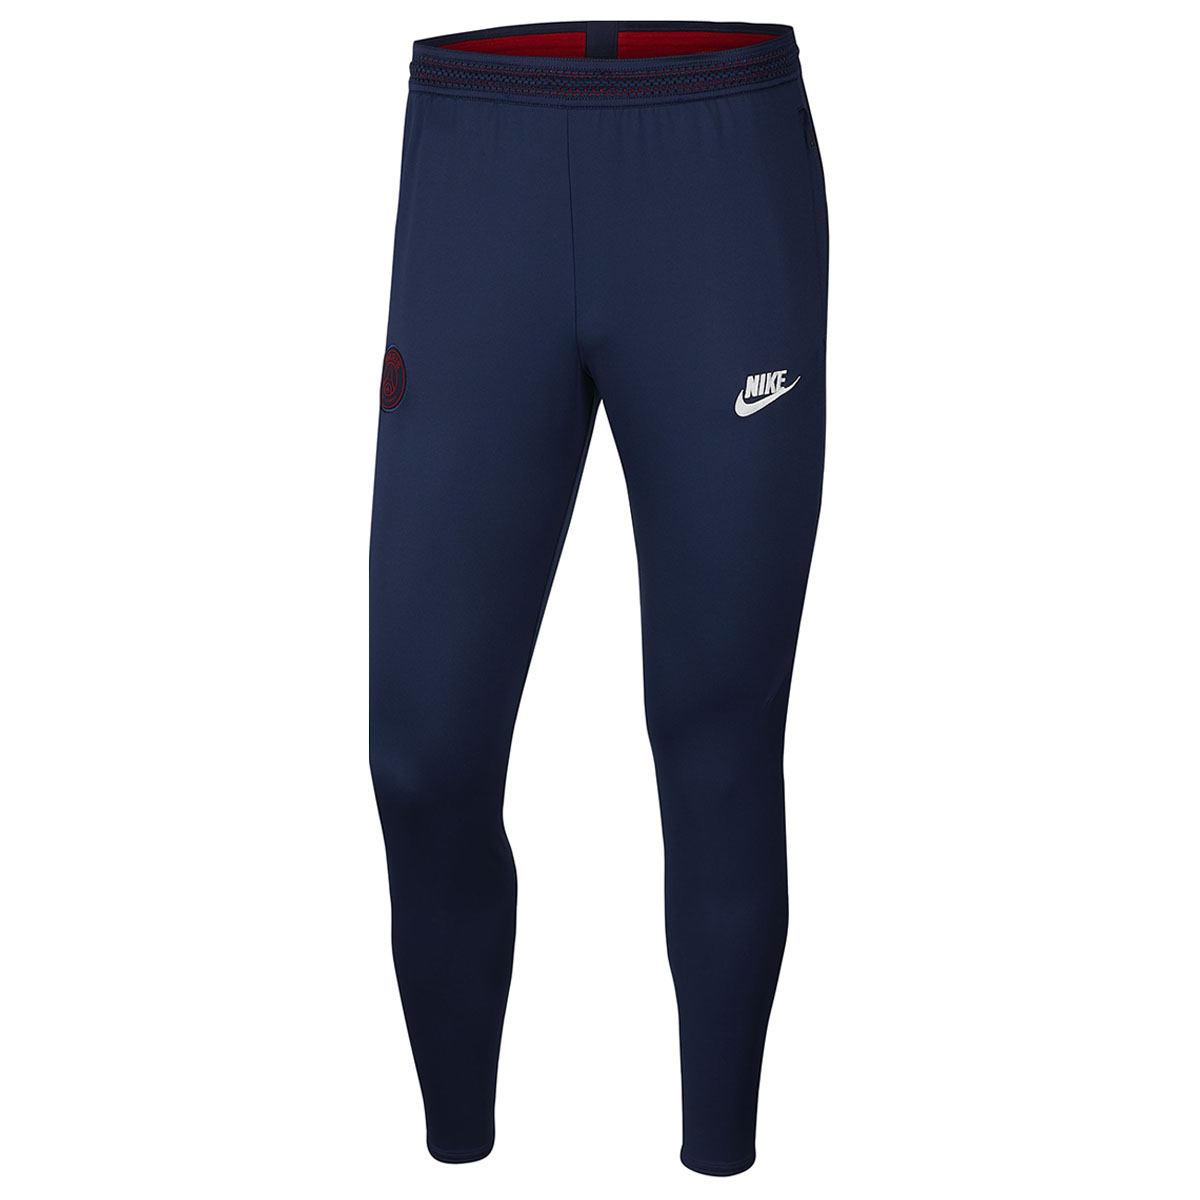 Pantalón Nike Saint-Germain Dry Strike